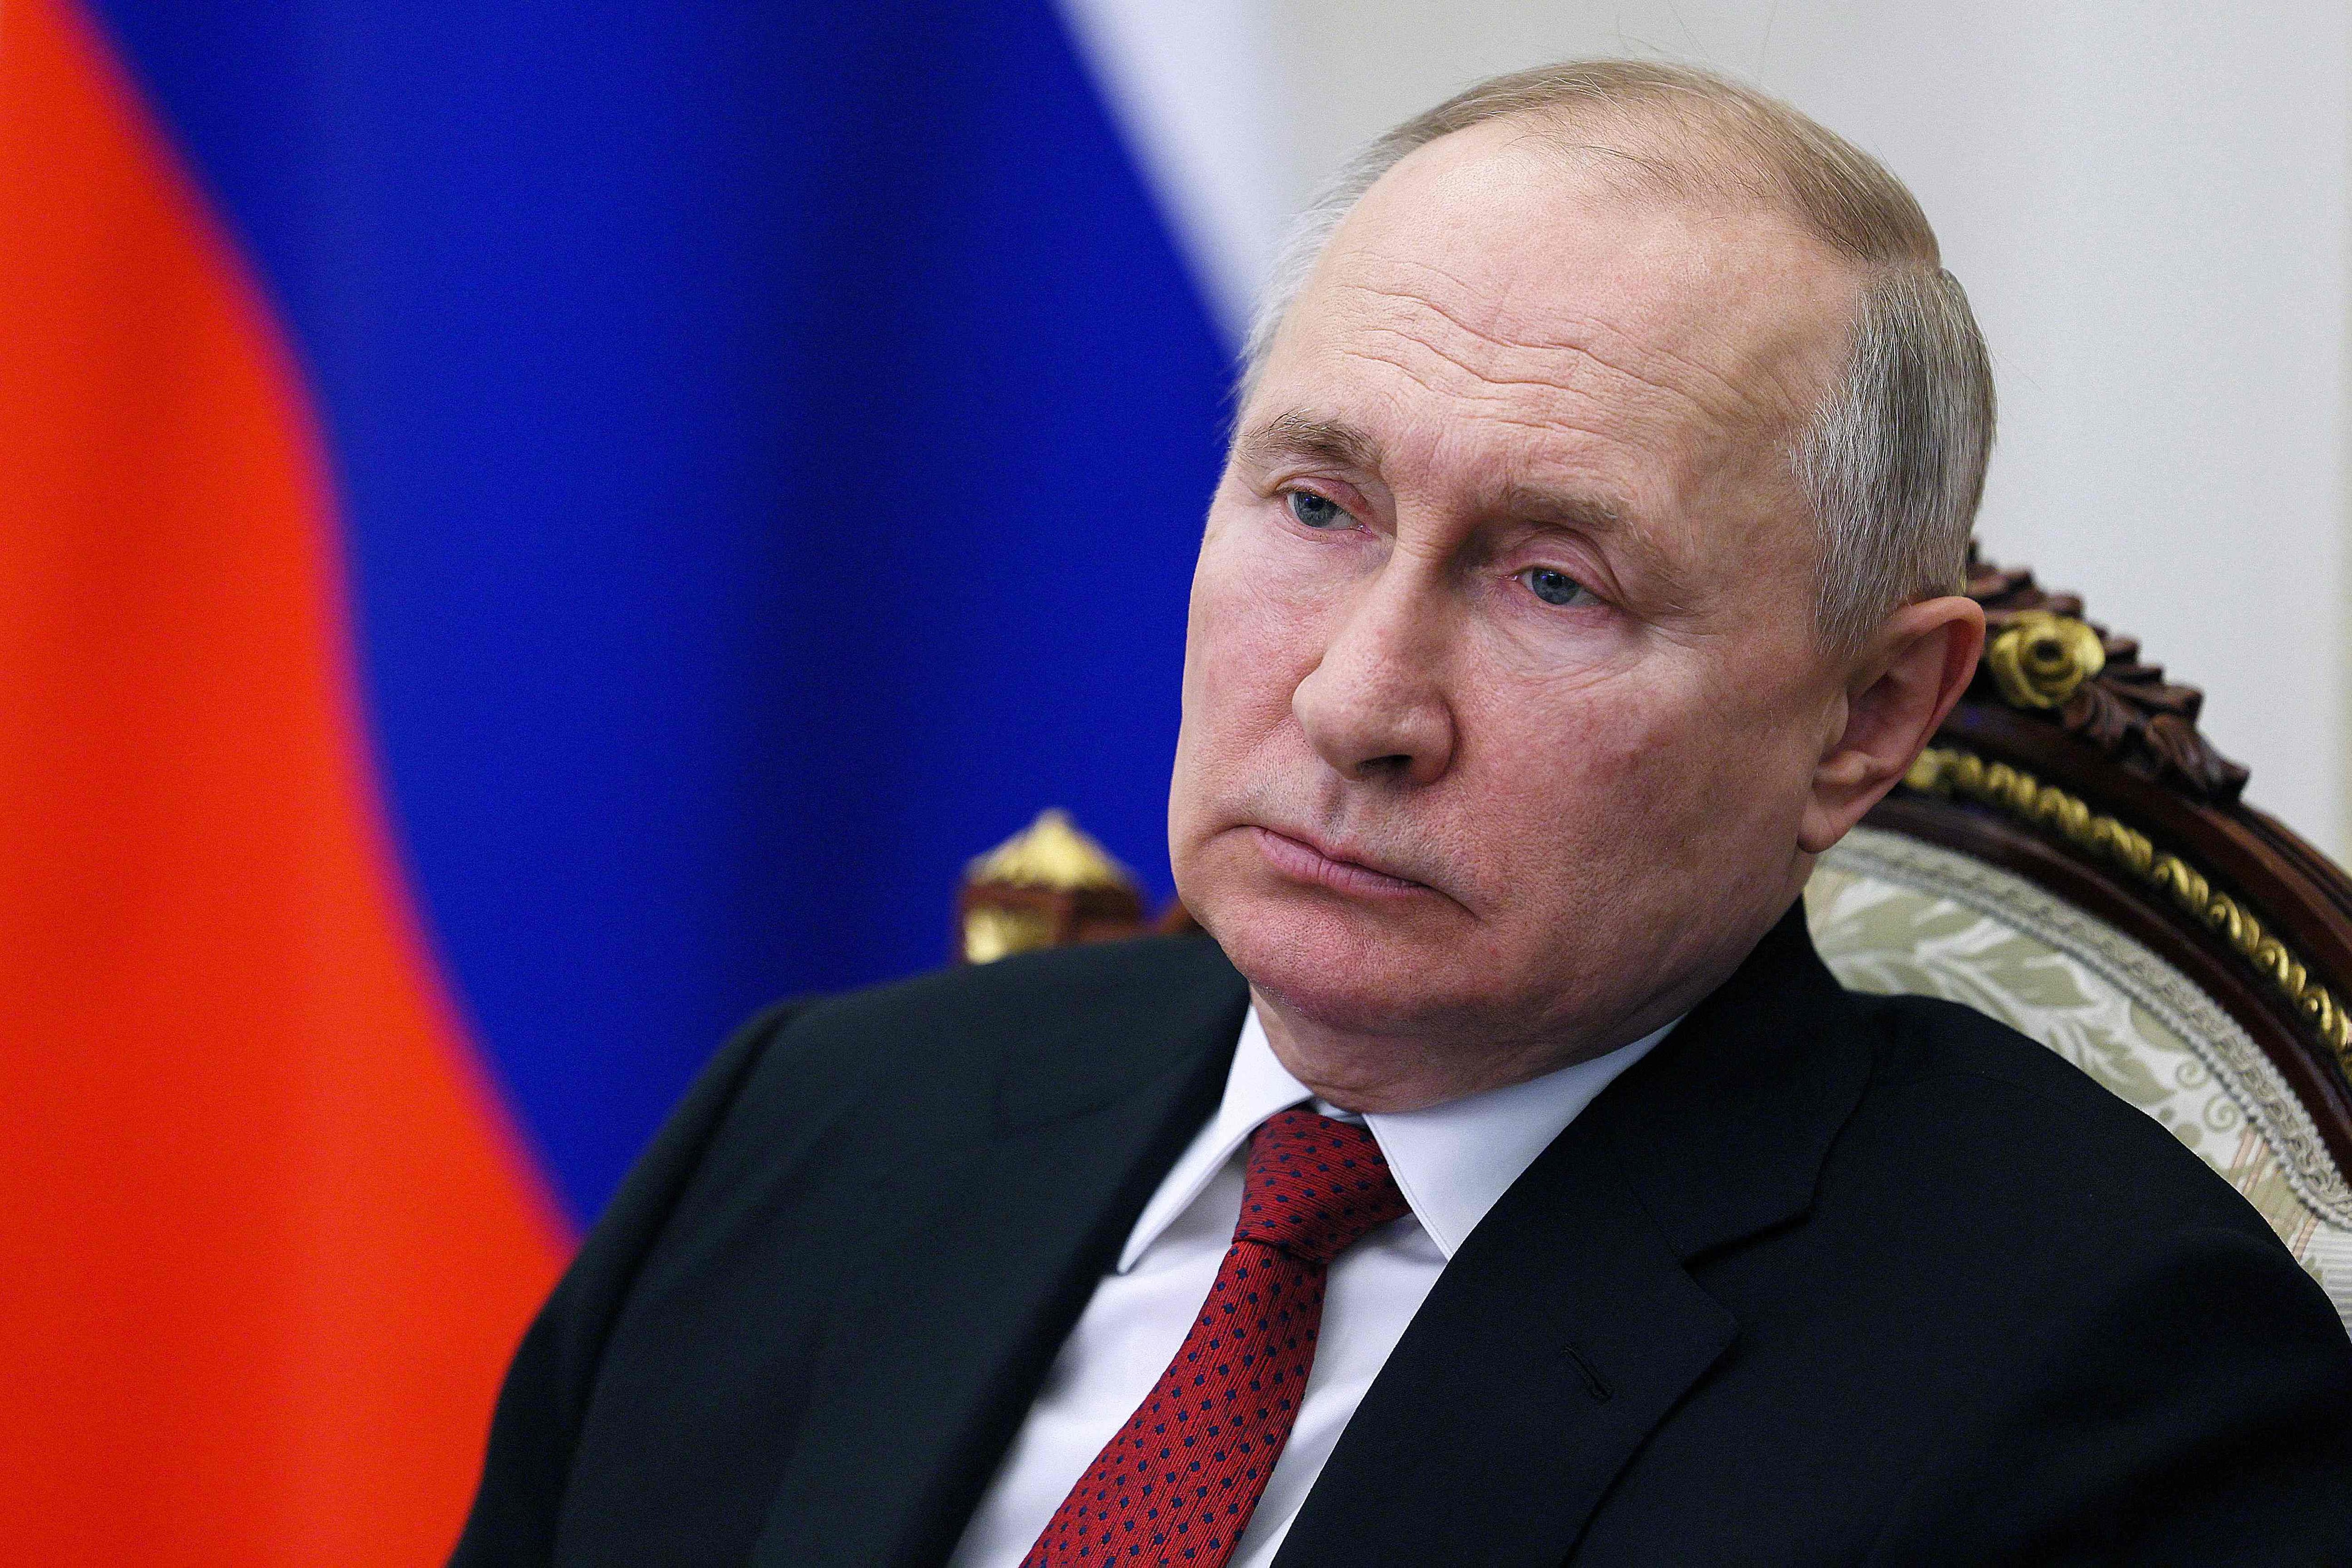 Vladimir Putin, de 70 años, ha gobernado Rusia durante casi dos décadas y media desde la renuncia de Boris Yeltsin en 1999, el primer presidente después del fin de la Unión Soviética.